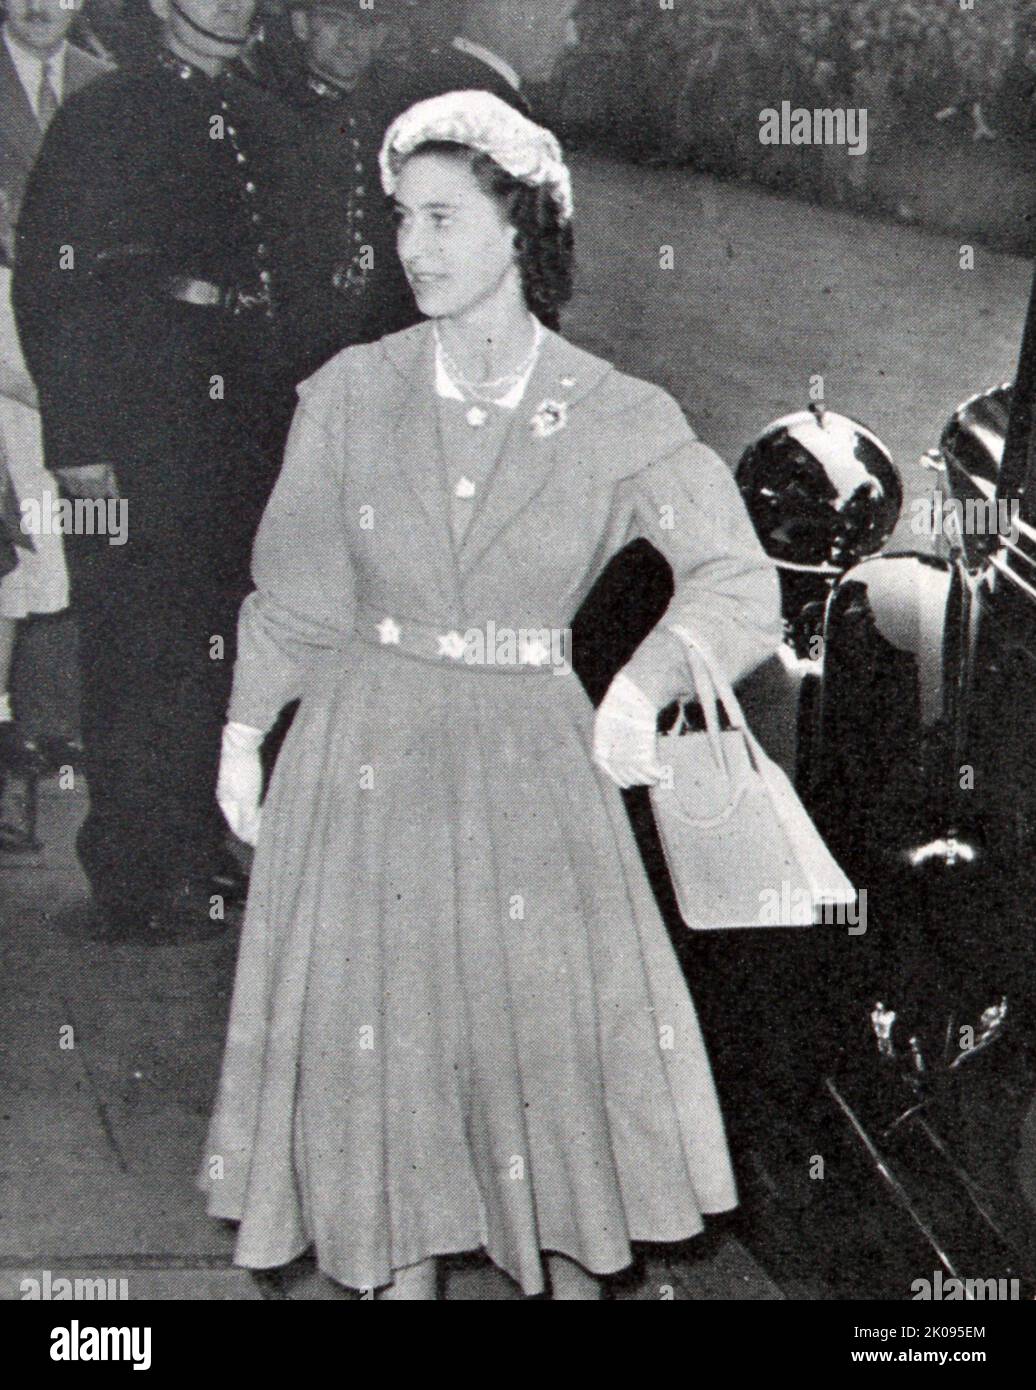 S.A.R. la principessa Margaret arriva per il matrimonio del conte di Harewood. Principessa Margaret, Contessa di Snowdon, ci, GCVO, CD (Margaret Rose; 21 agosto 1930 - 9 febbraio 2002) fu la figlia minore di re Giorgio VI e della regina Elisabetta, e l'unico fratello della regina Elisabetta II Foto Stock